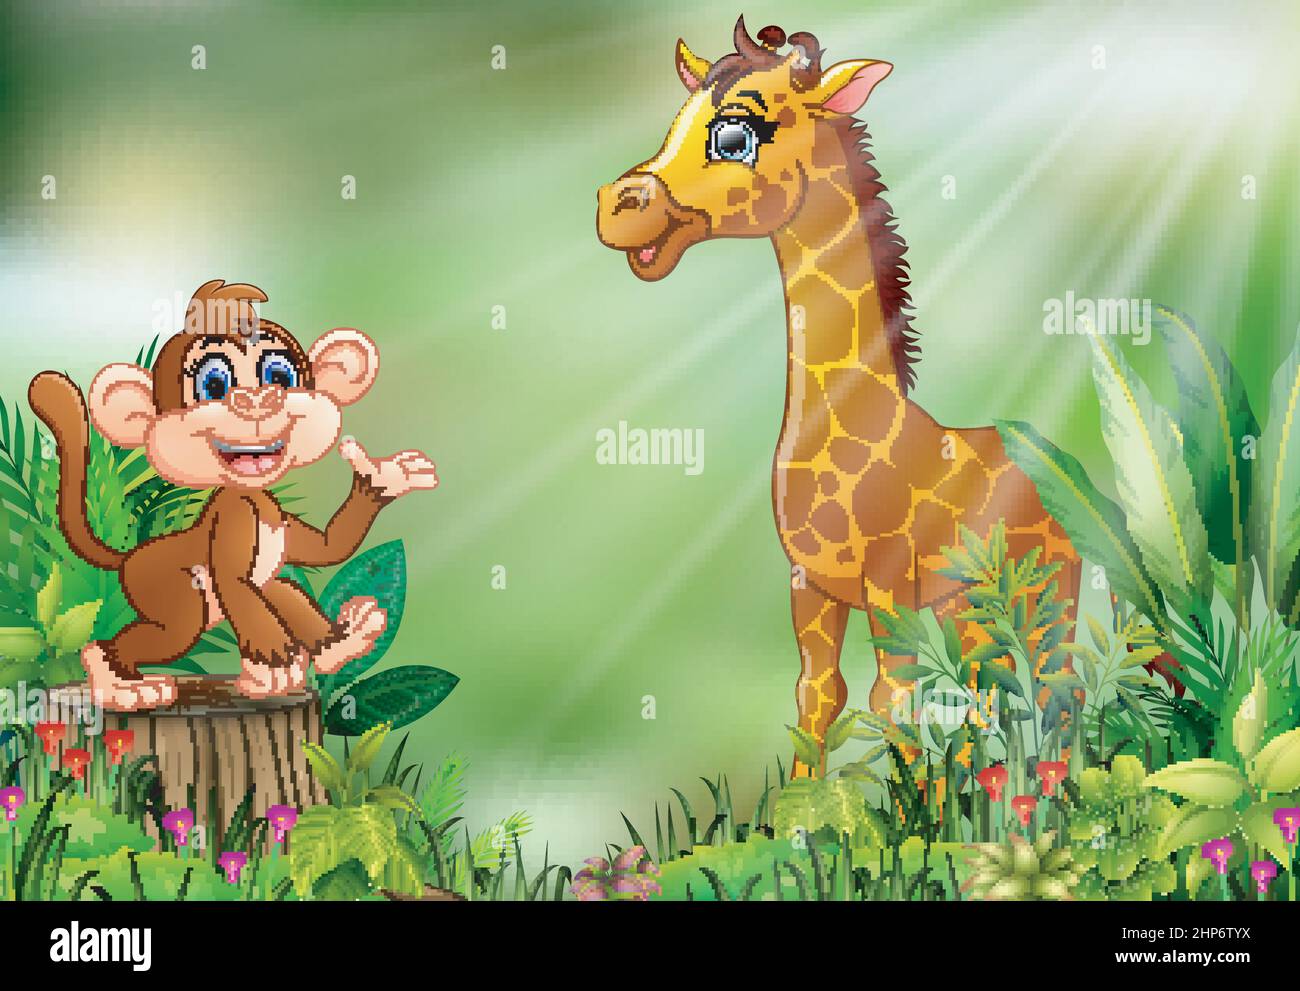 Dessin animé de la scène de la nature avec un singe assis sur une souche d'arbre et une girafe Illustration de Vecteur